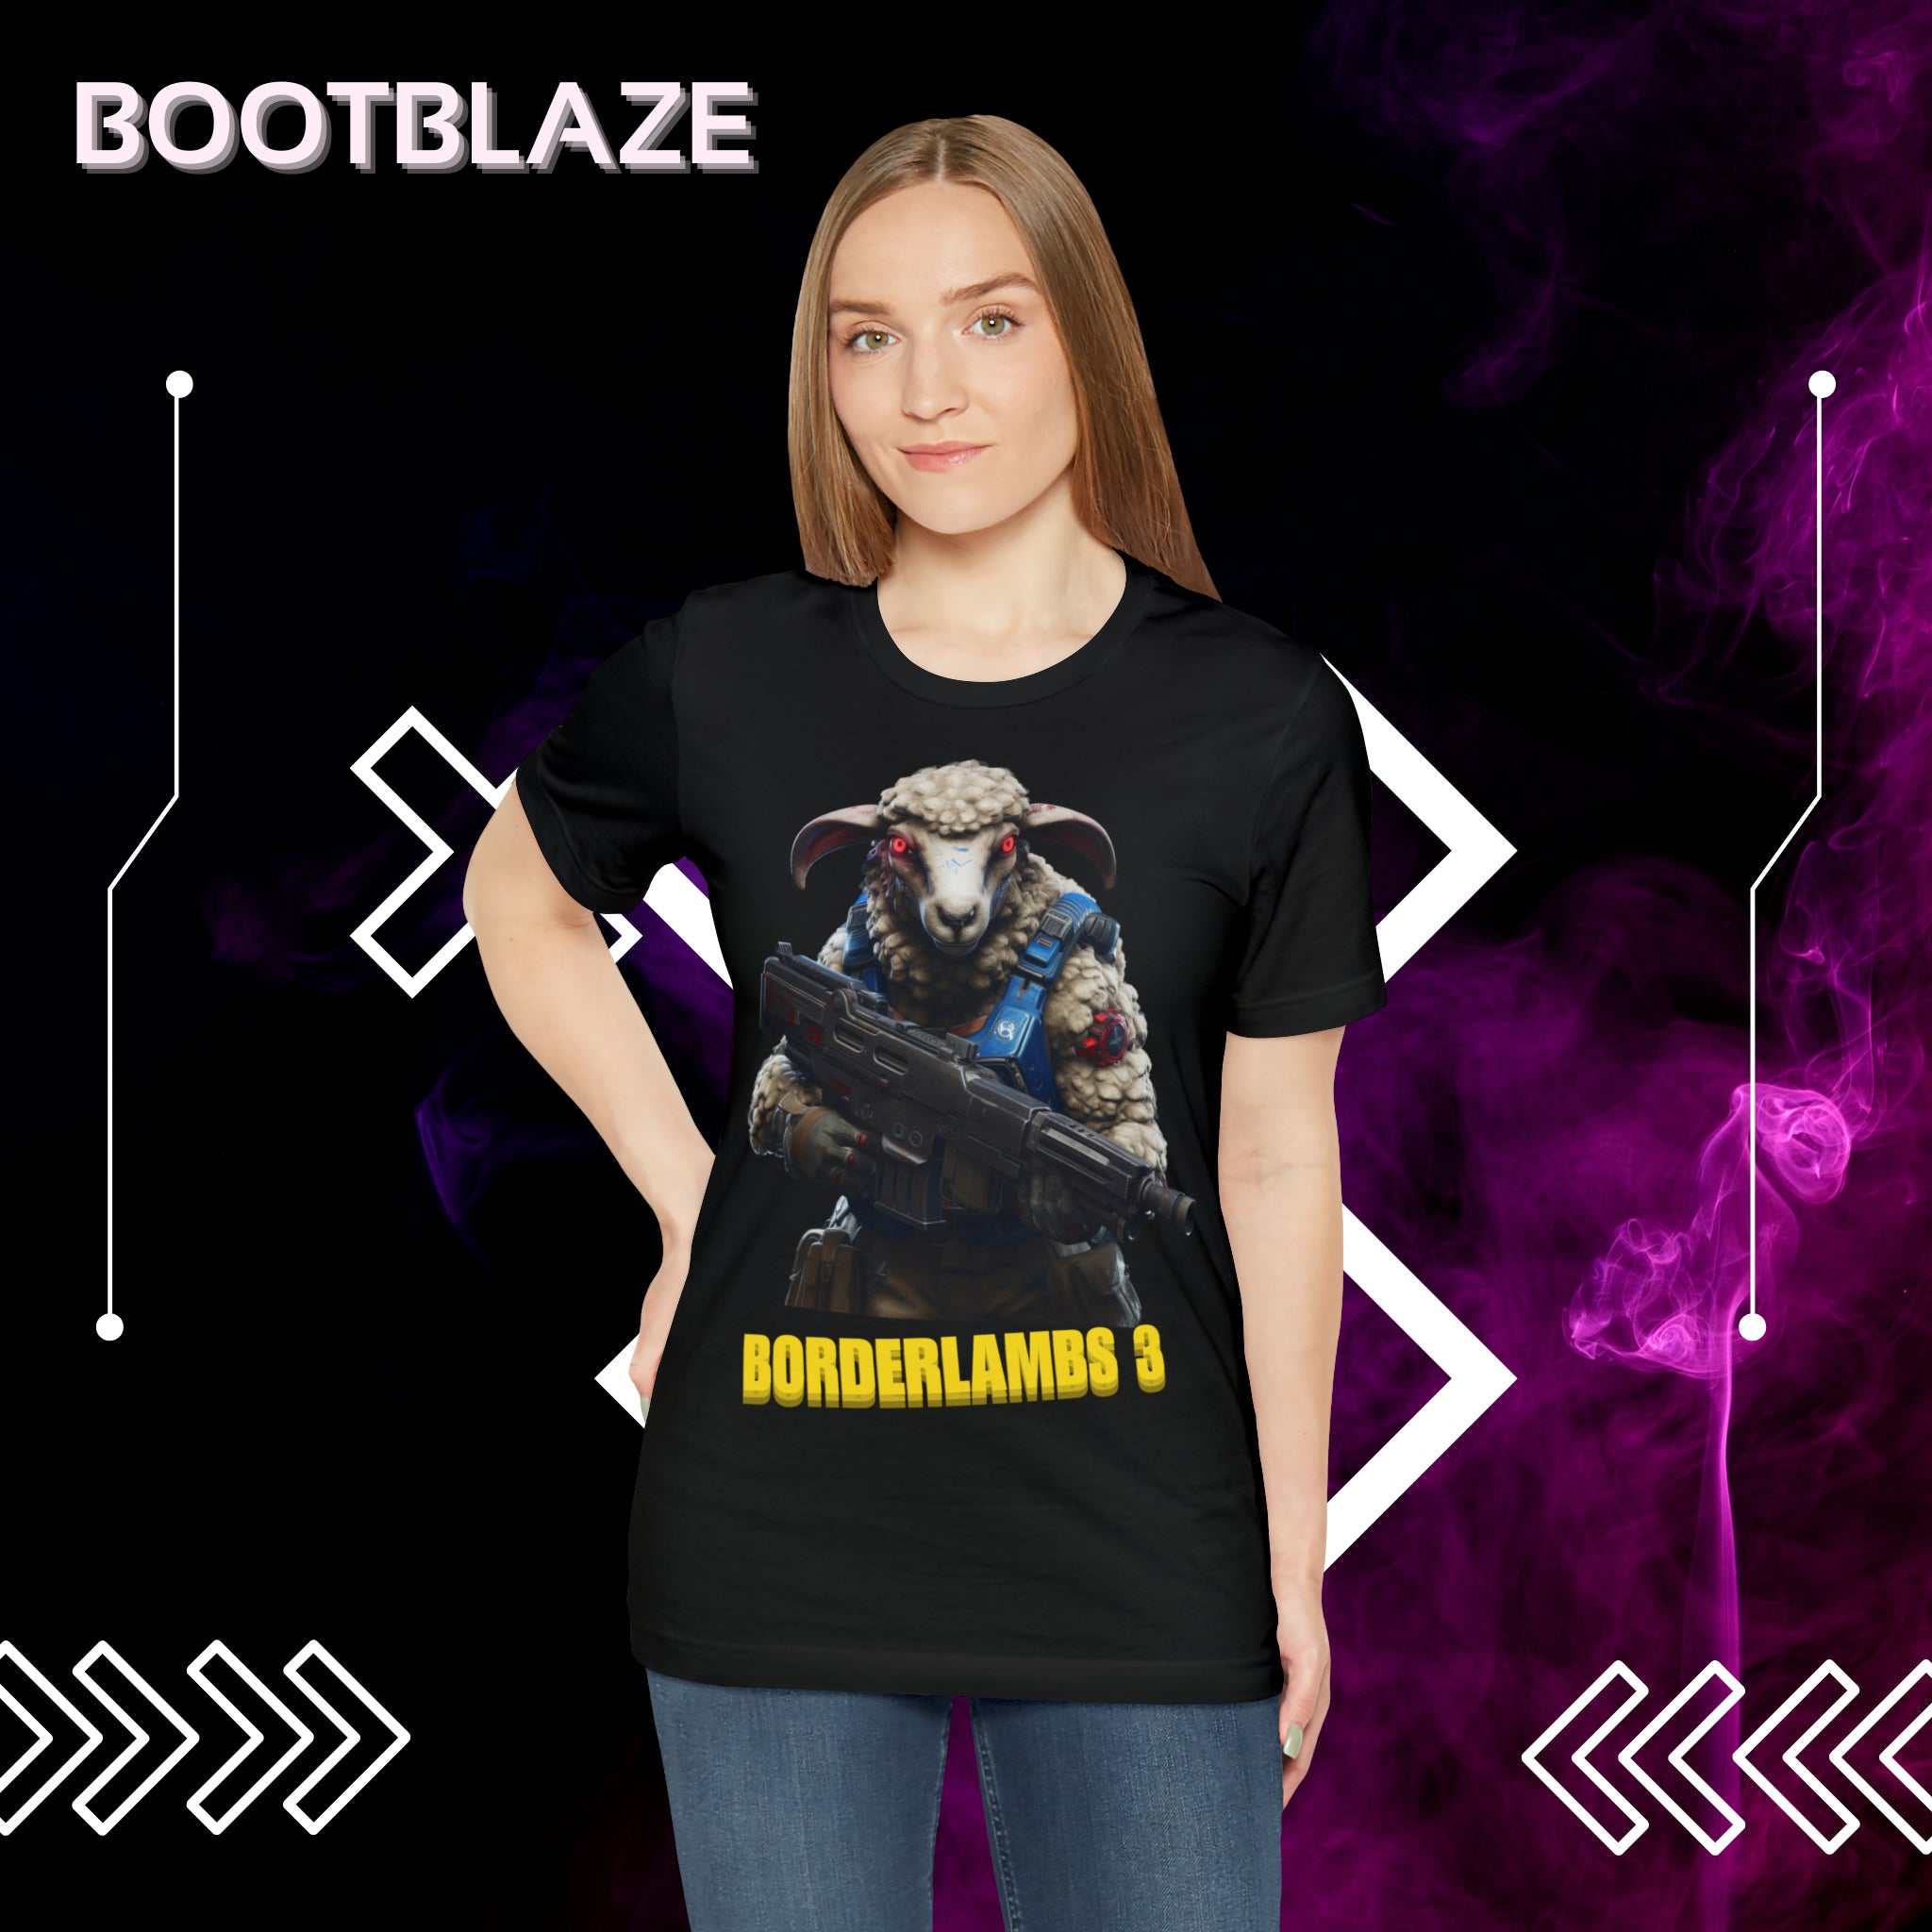 Borderlambs Game Style T-Shirt - Baa Baa Badass!